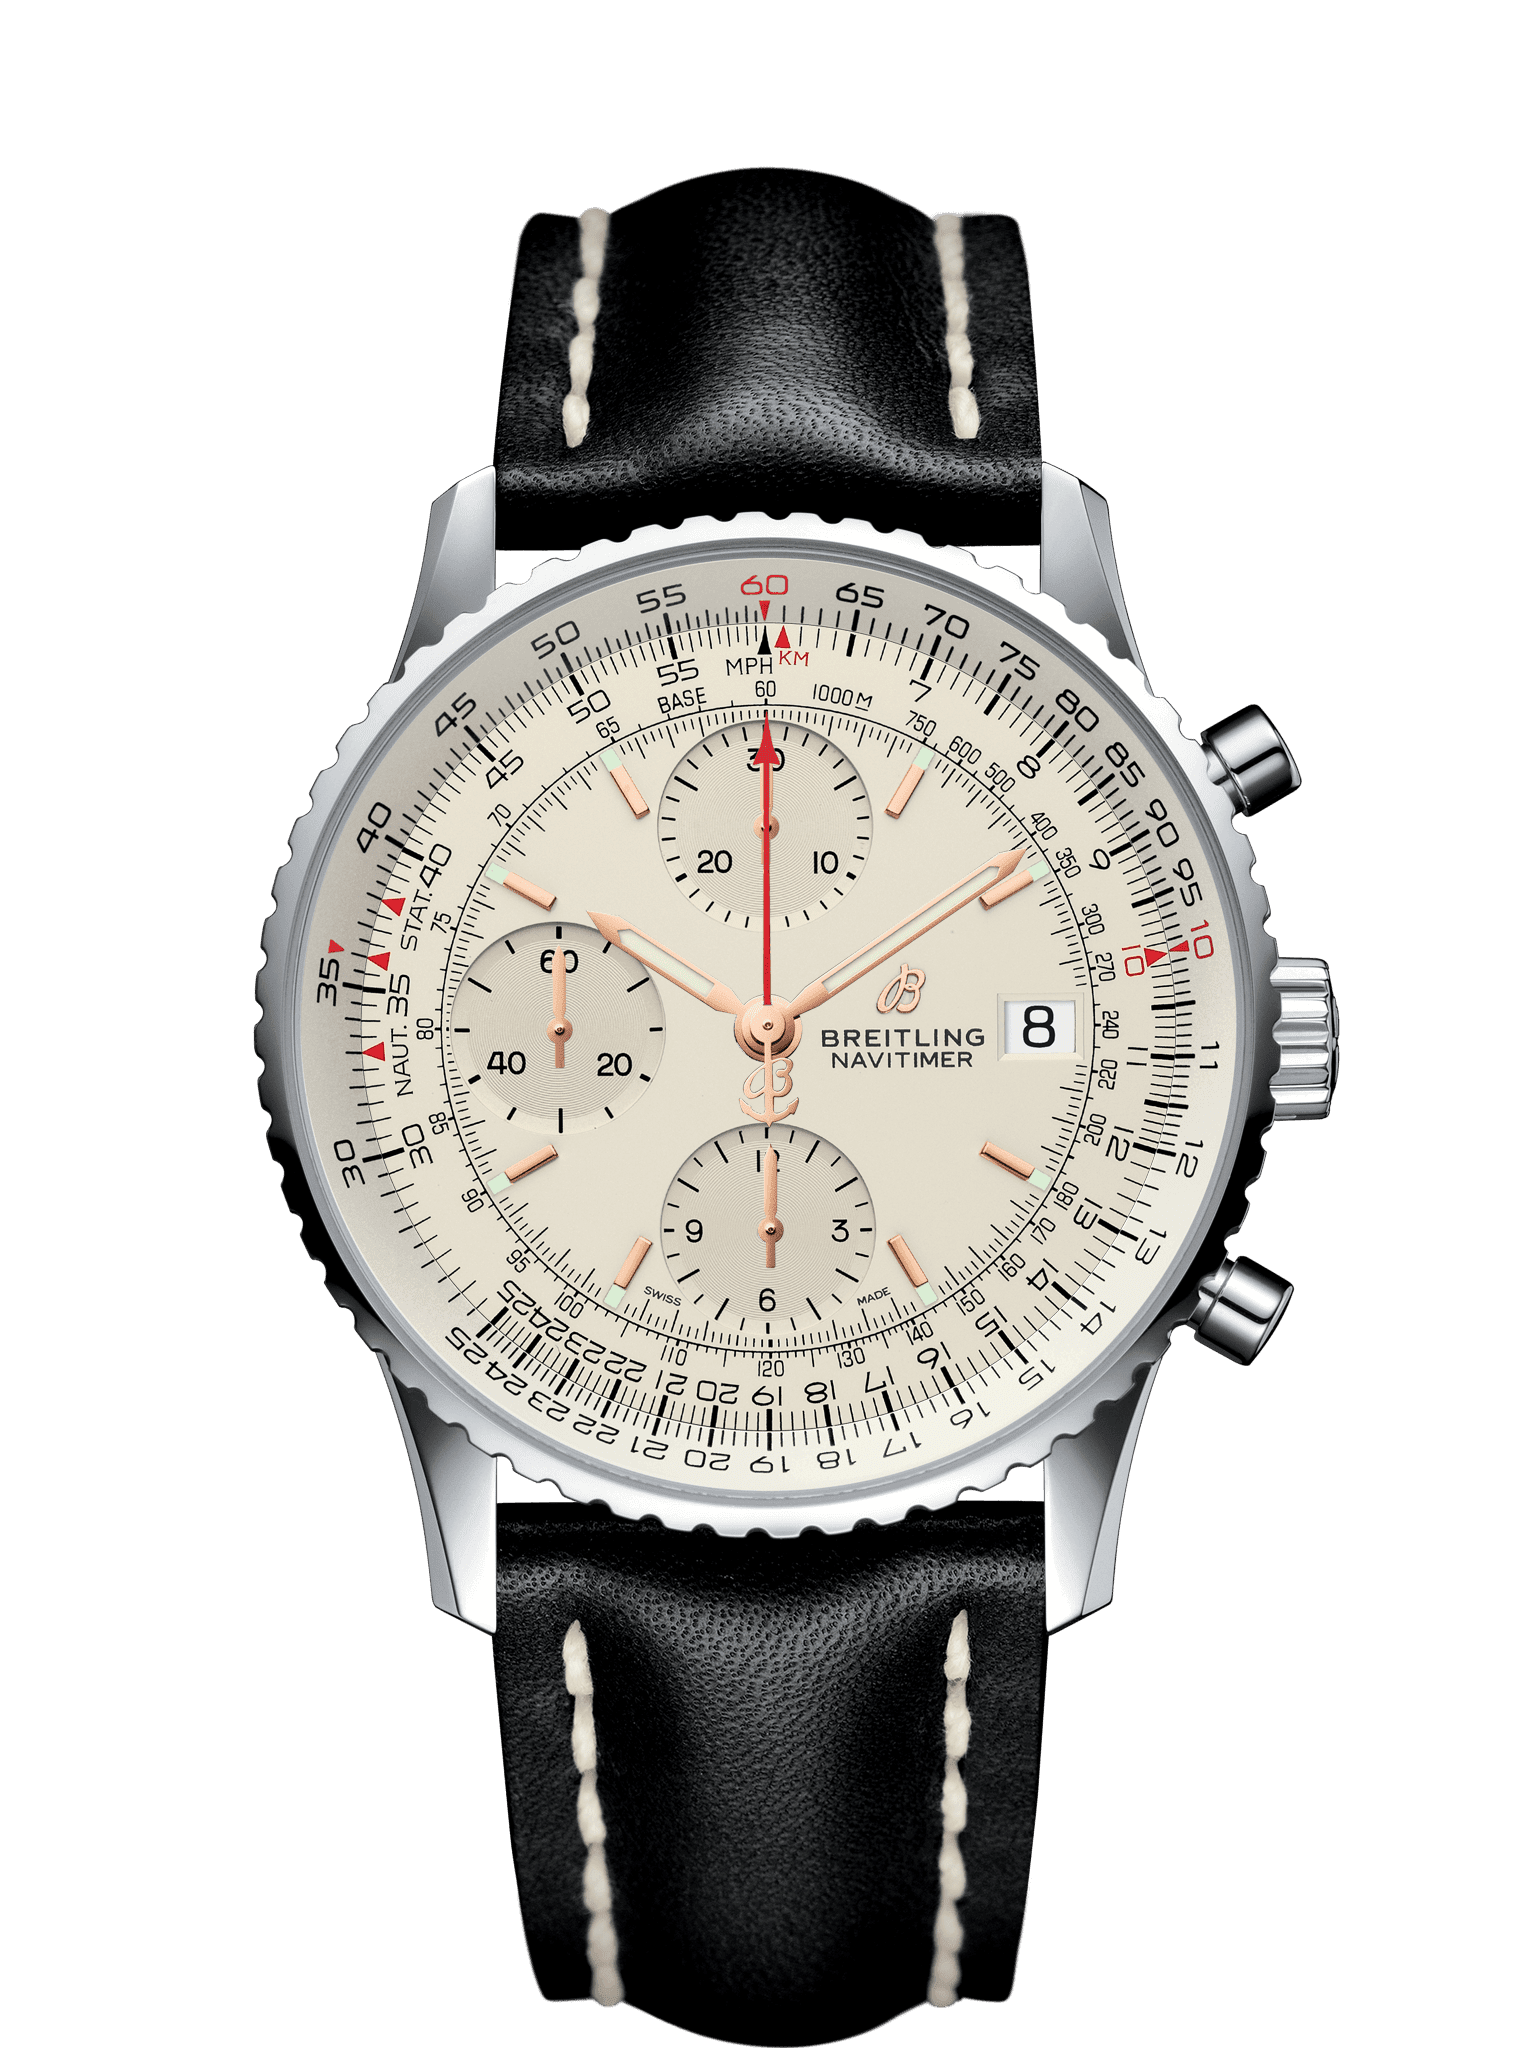 Bretling Navitimer 1 B01 chronometer